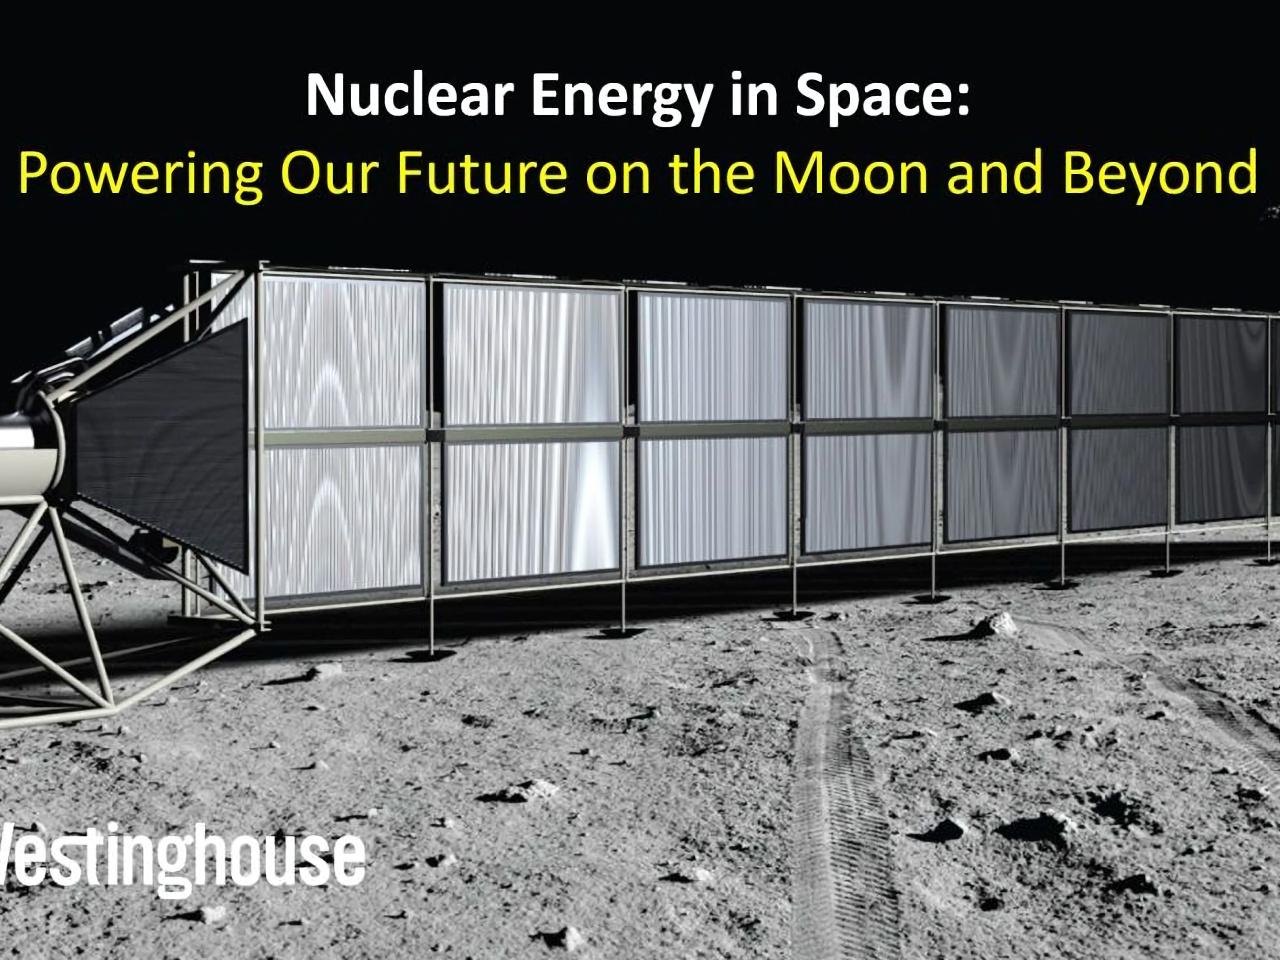 月や火星、軌道上で発電可能な小型原子炉を開発へ-WestinghouseとAstrobotic